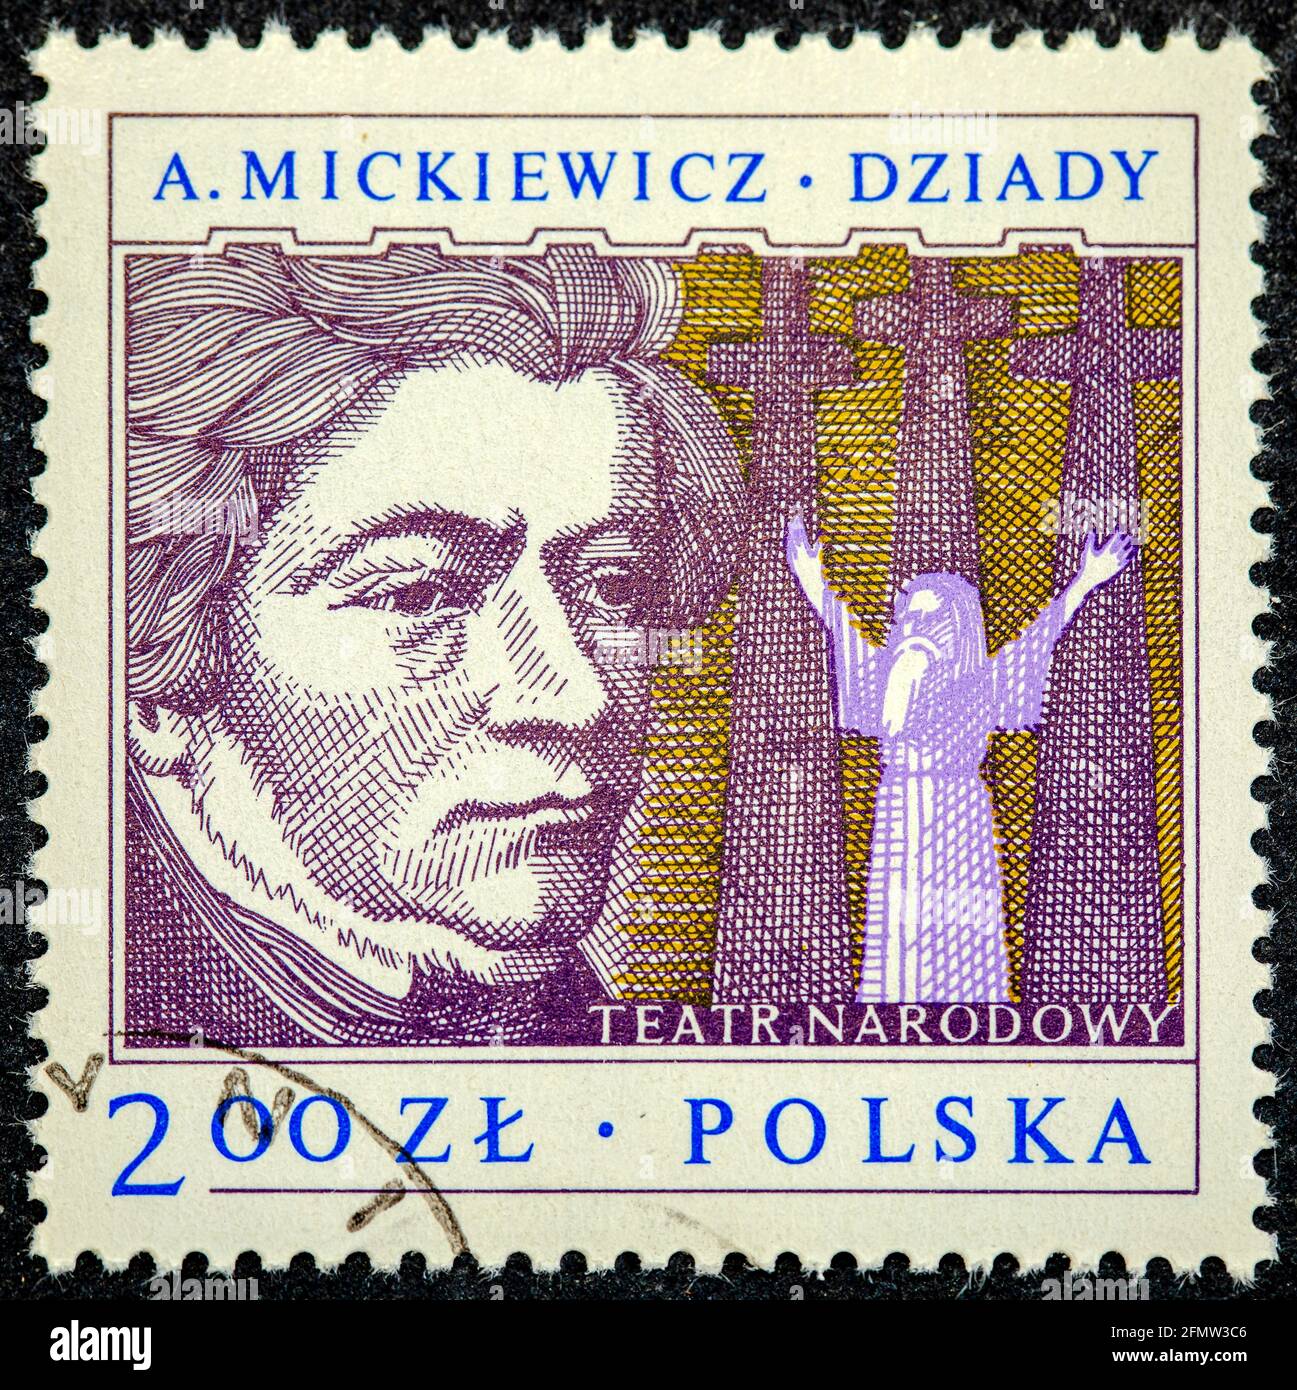 Pologne - Circa 1978: Un timbre imprimé en Pologne montre Adam Mickiewicz, dramaturge polonais, vers 1978 Banque D'Images